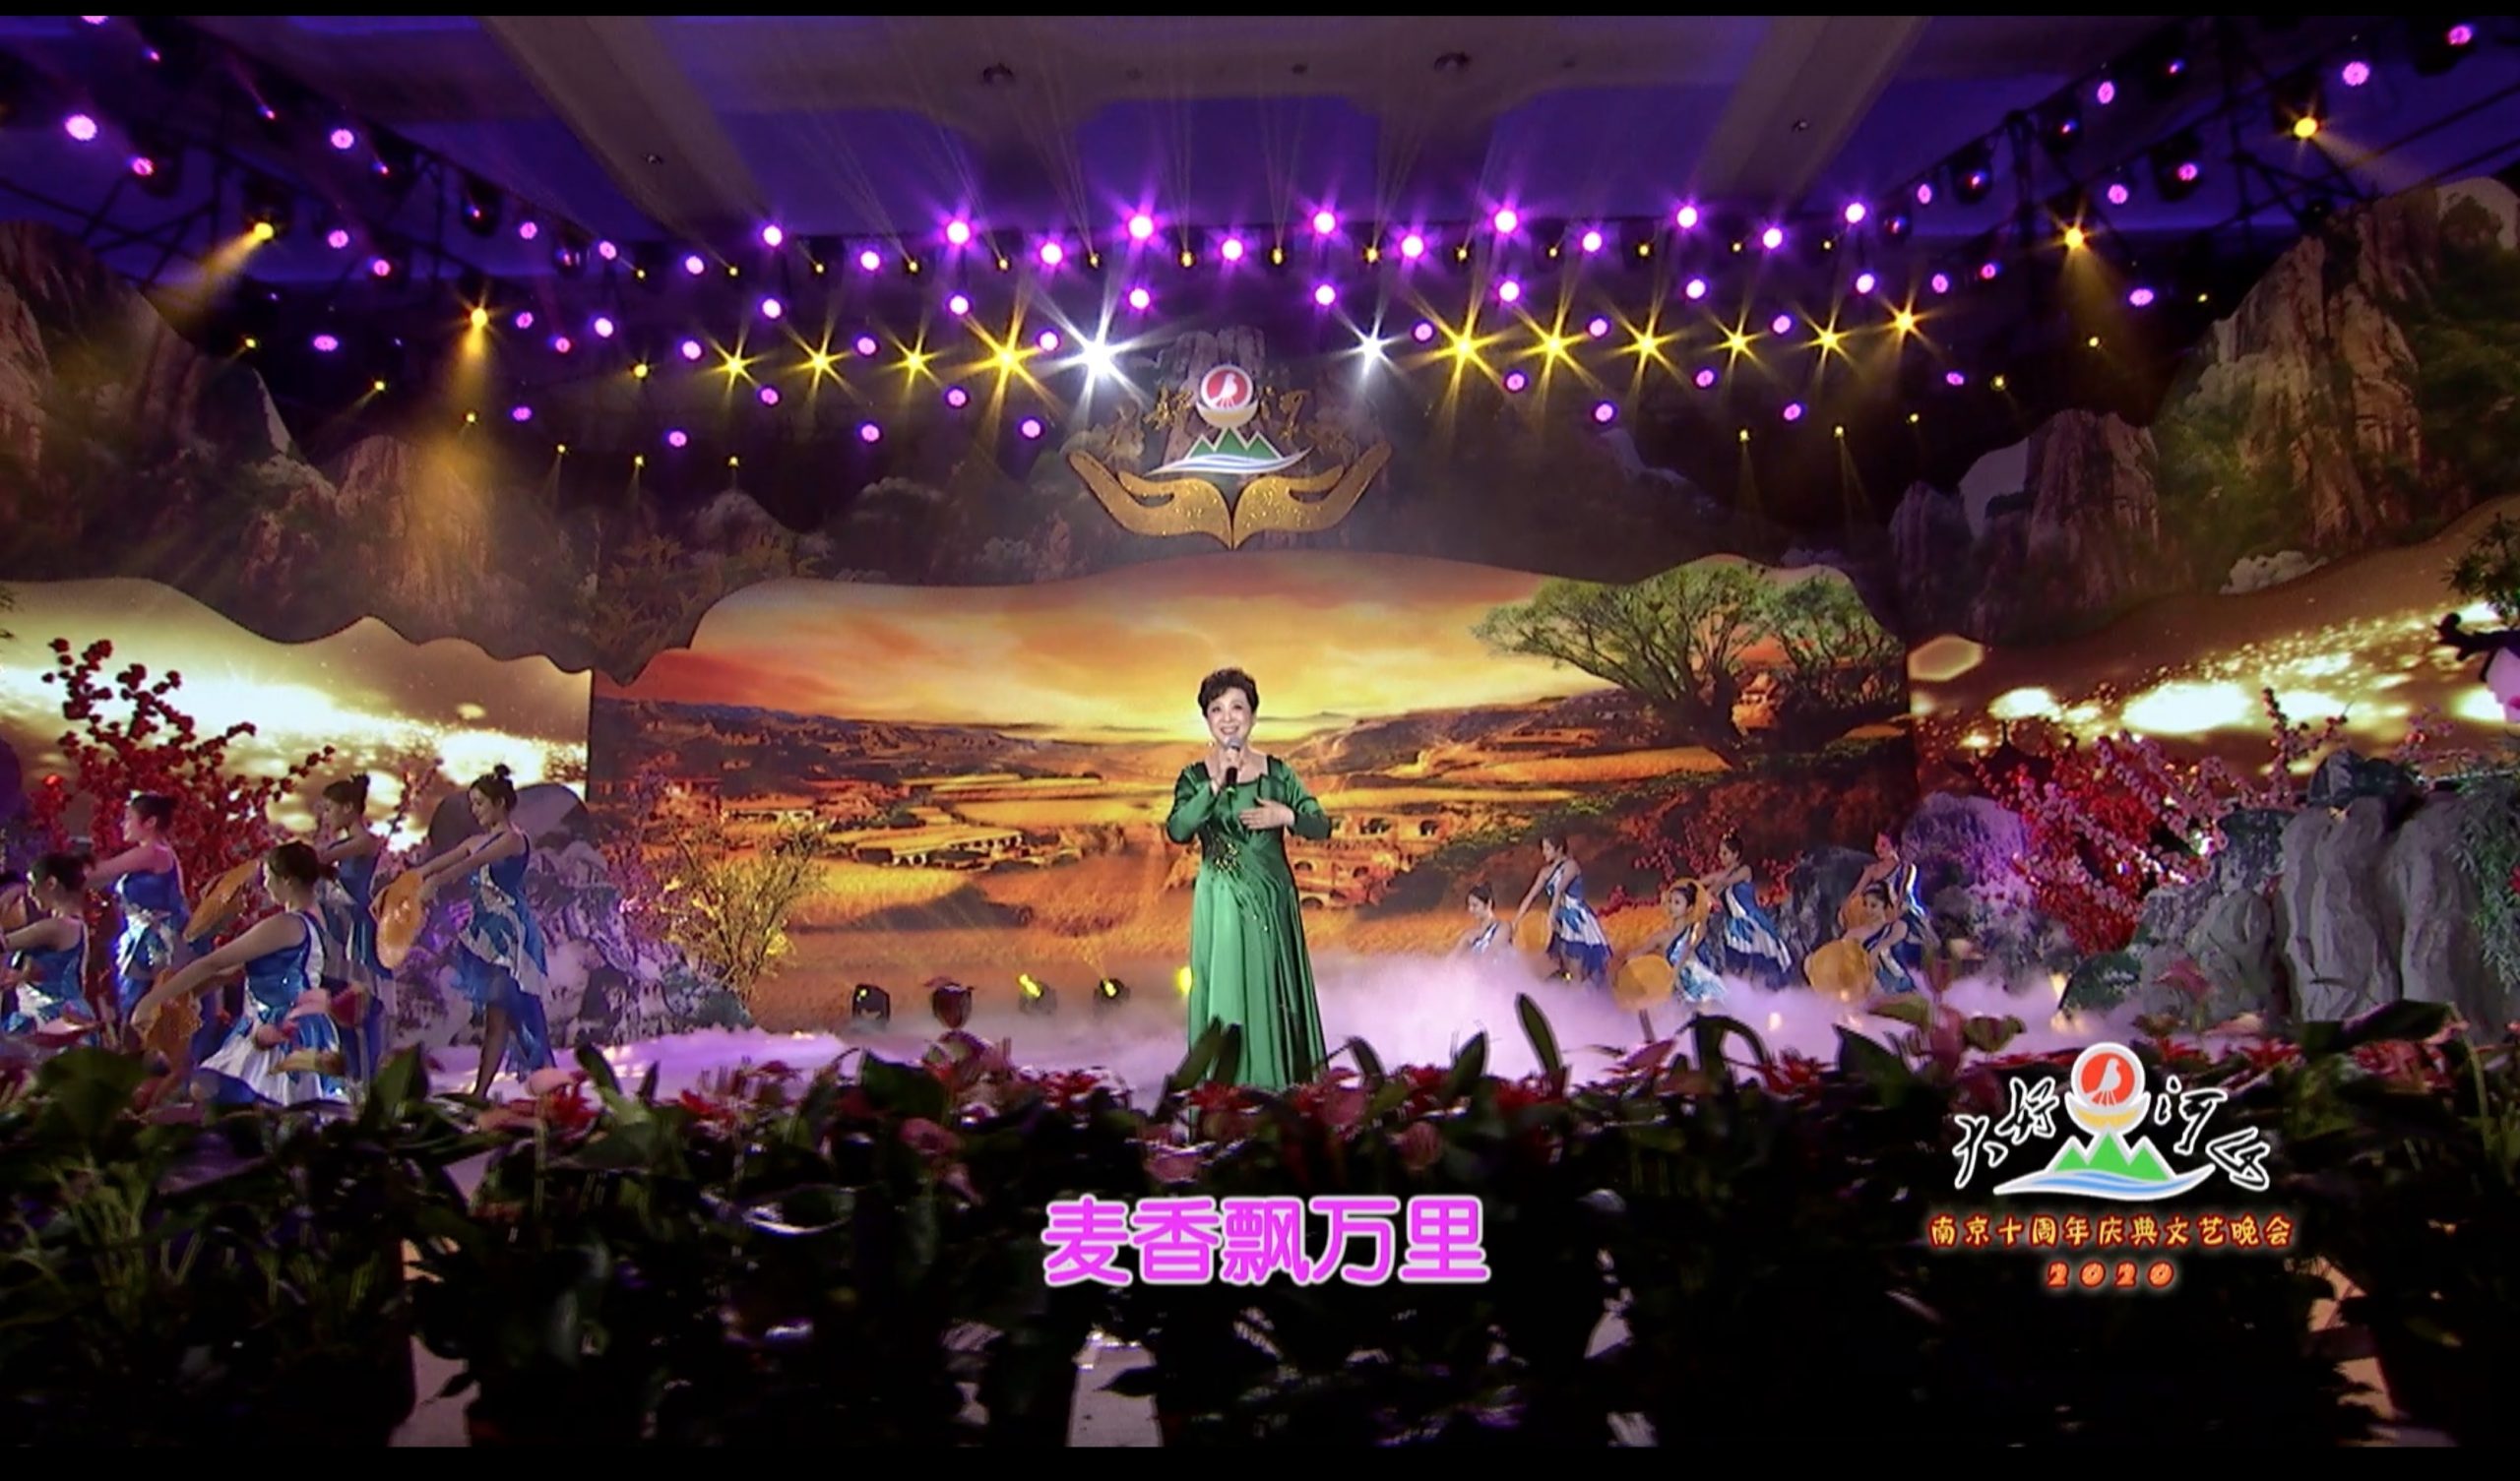 2020大好河山南京十周年庆典公益晚会 歌曲《双脚踏上幸福路》王馥荔